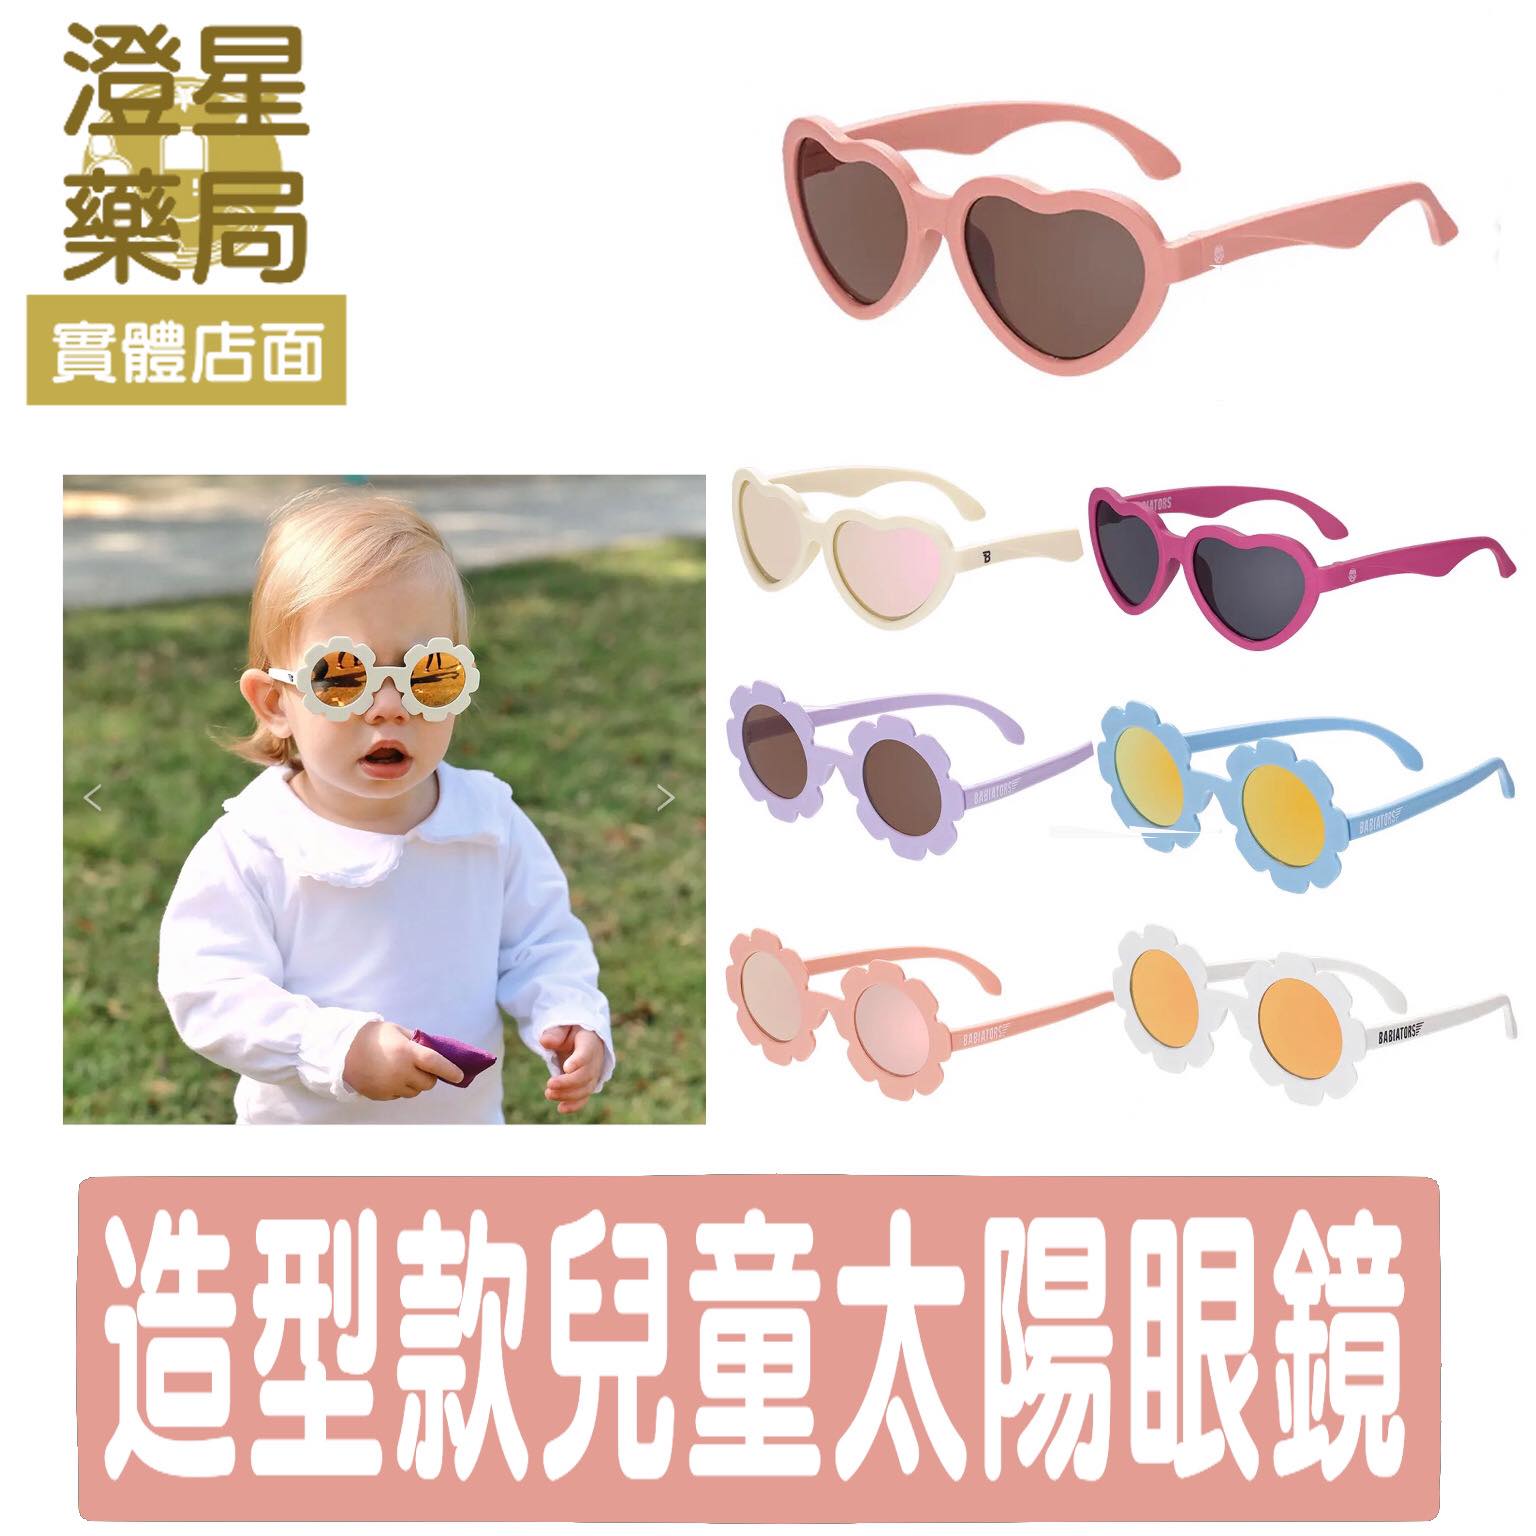 美國 Babiators 造型款兒童太陽眼鏡 兒童眼鏡 嬰兒眼鏡 寶寶太陽眼鏡 墨鏡